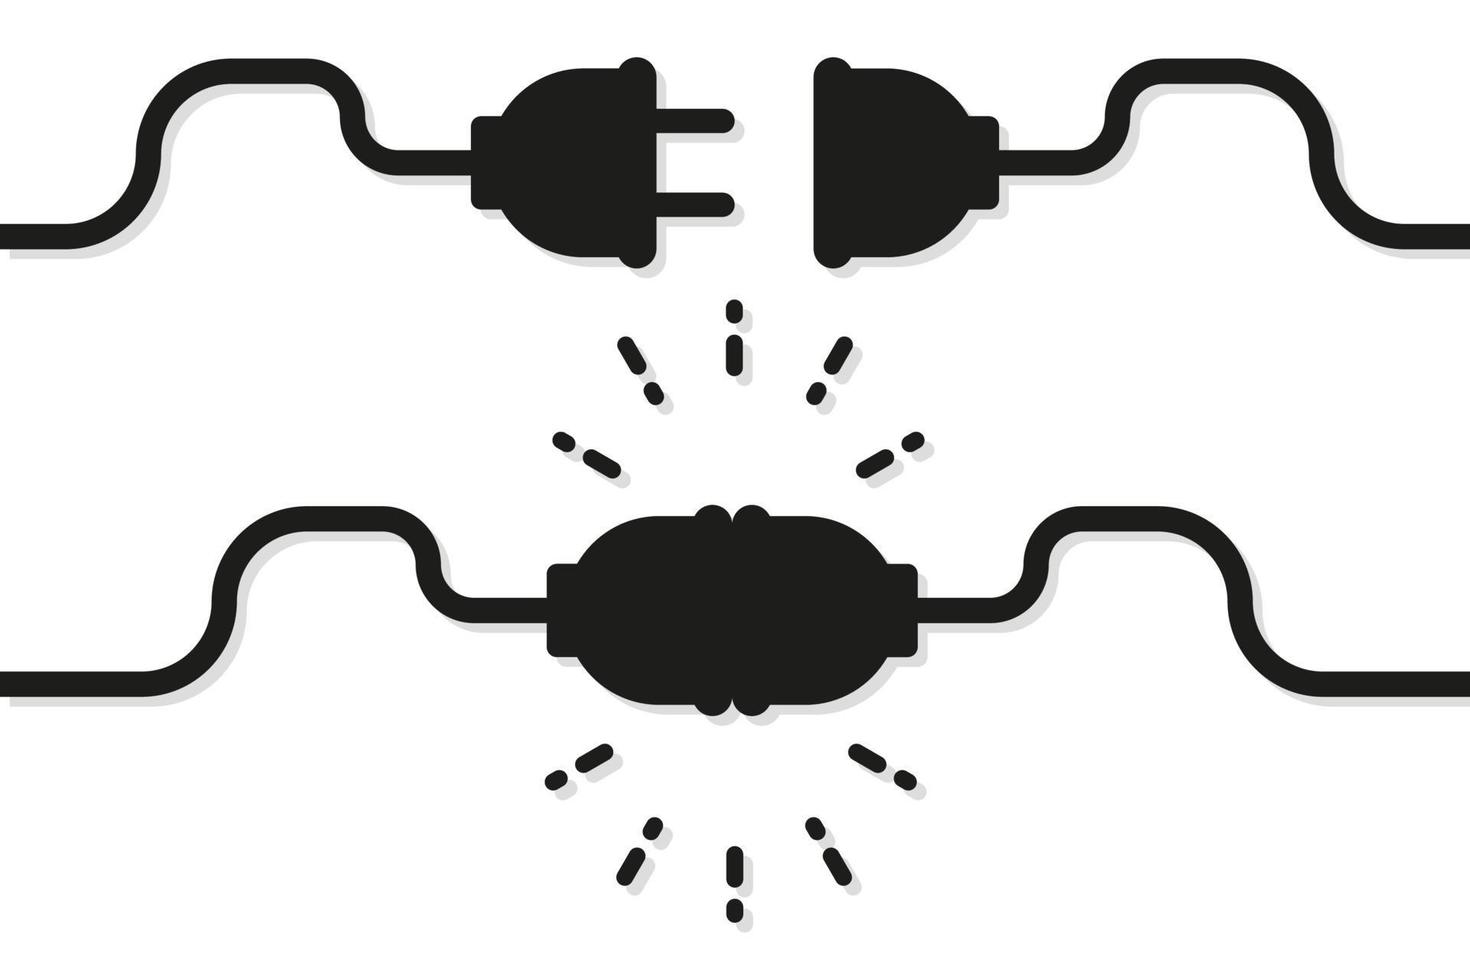 Electric Socket illustration. Vector in flat design